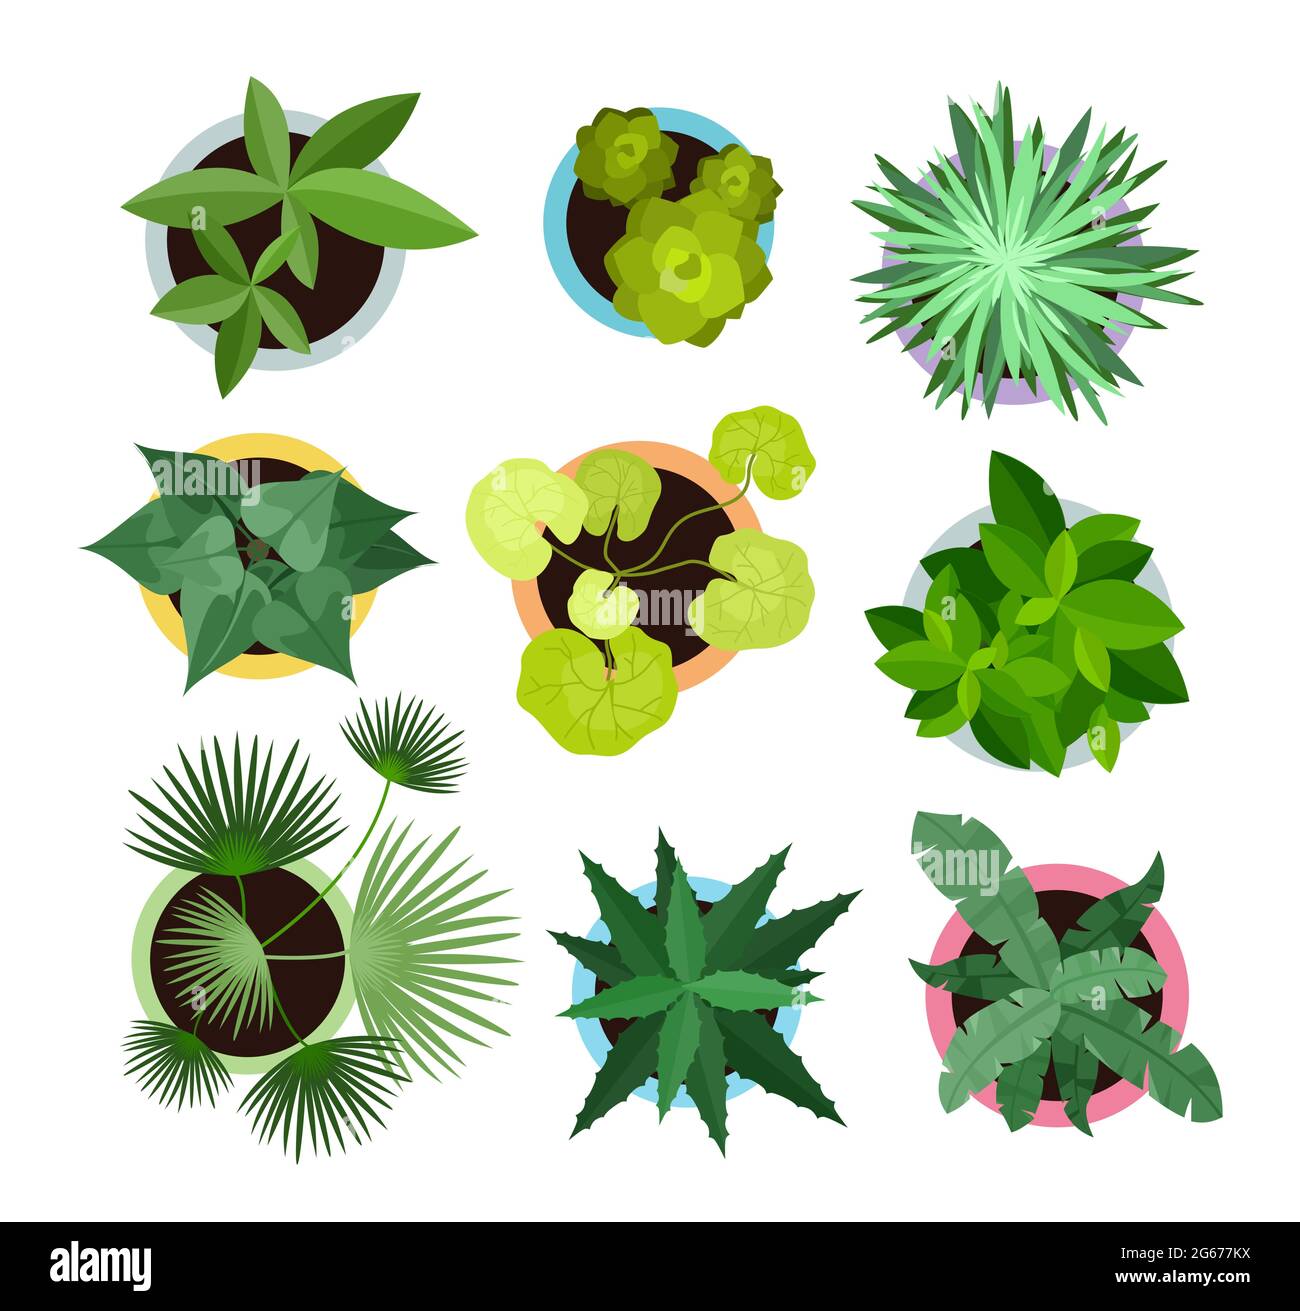 Vektor-Illustration Satz von verschiedenen Hauspflanzen in Töpfen isoliert auf weißem Hintergrund. Draufsicht Sammlung von Pflanzen, Kaktus in flachen Cartoon-Stil. Stock Vektor